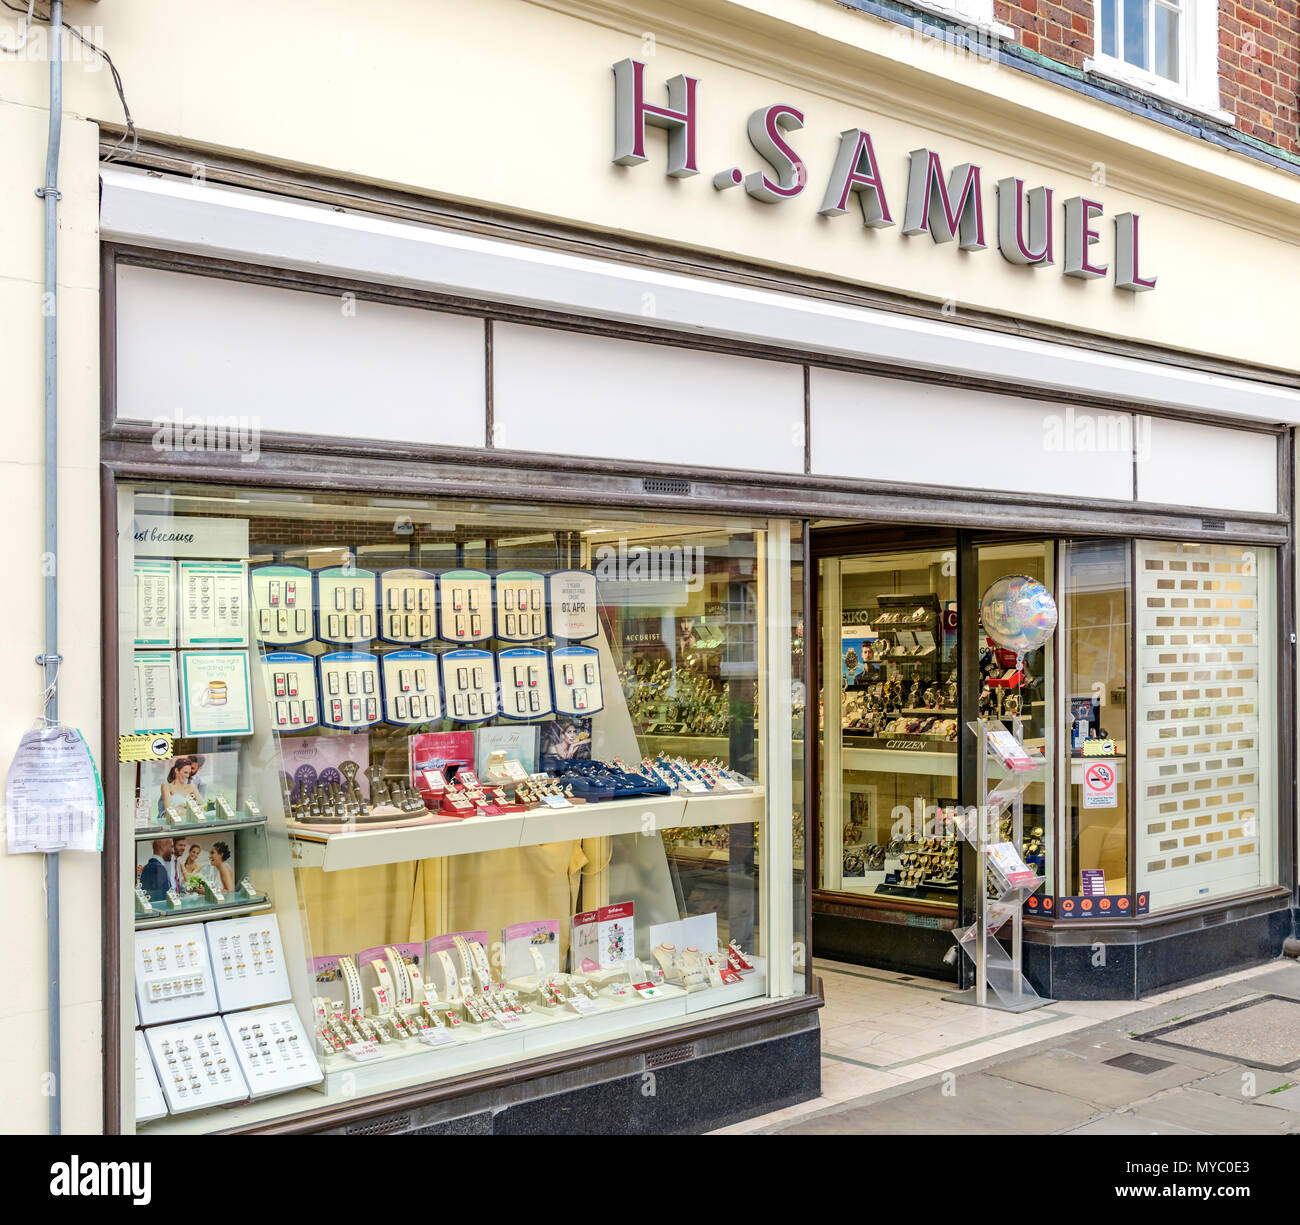 H Samuel shop front Stock Photo